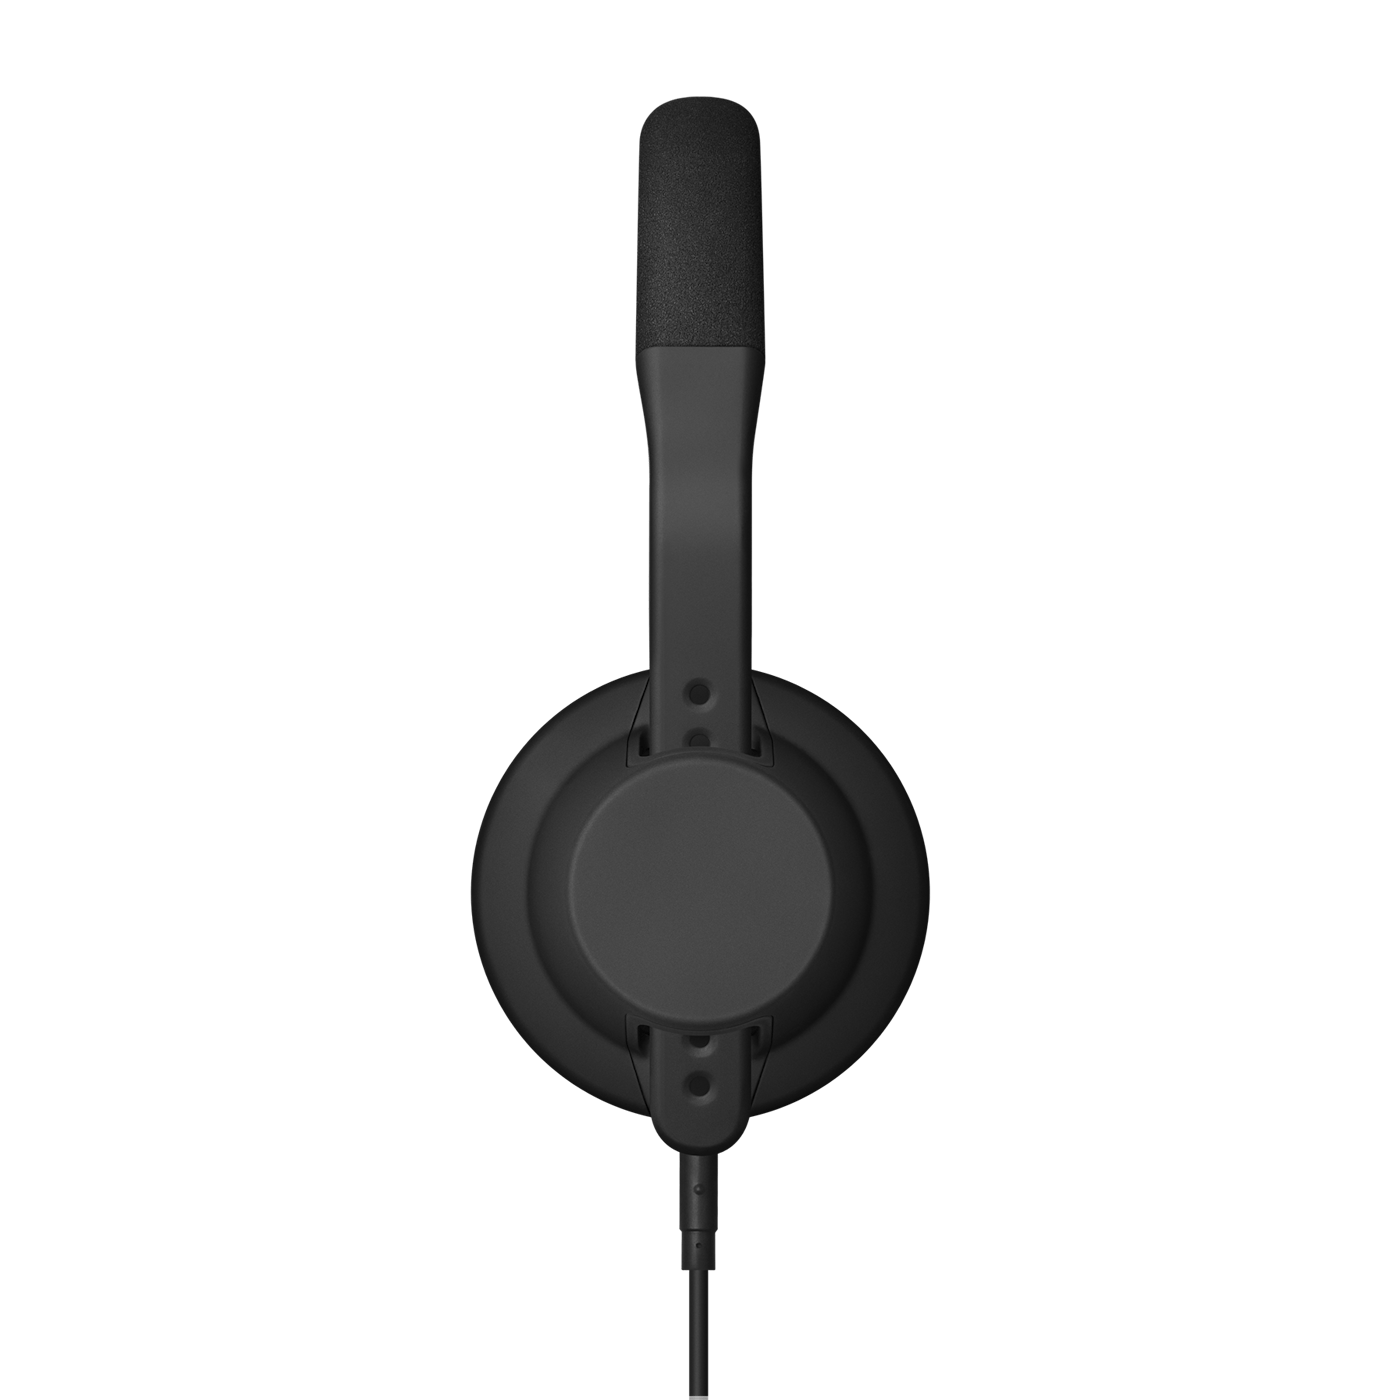 TMA-2 DJ XE Headphones | AIAIAI